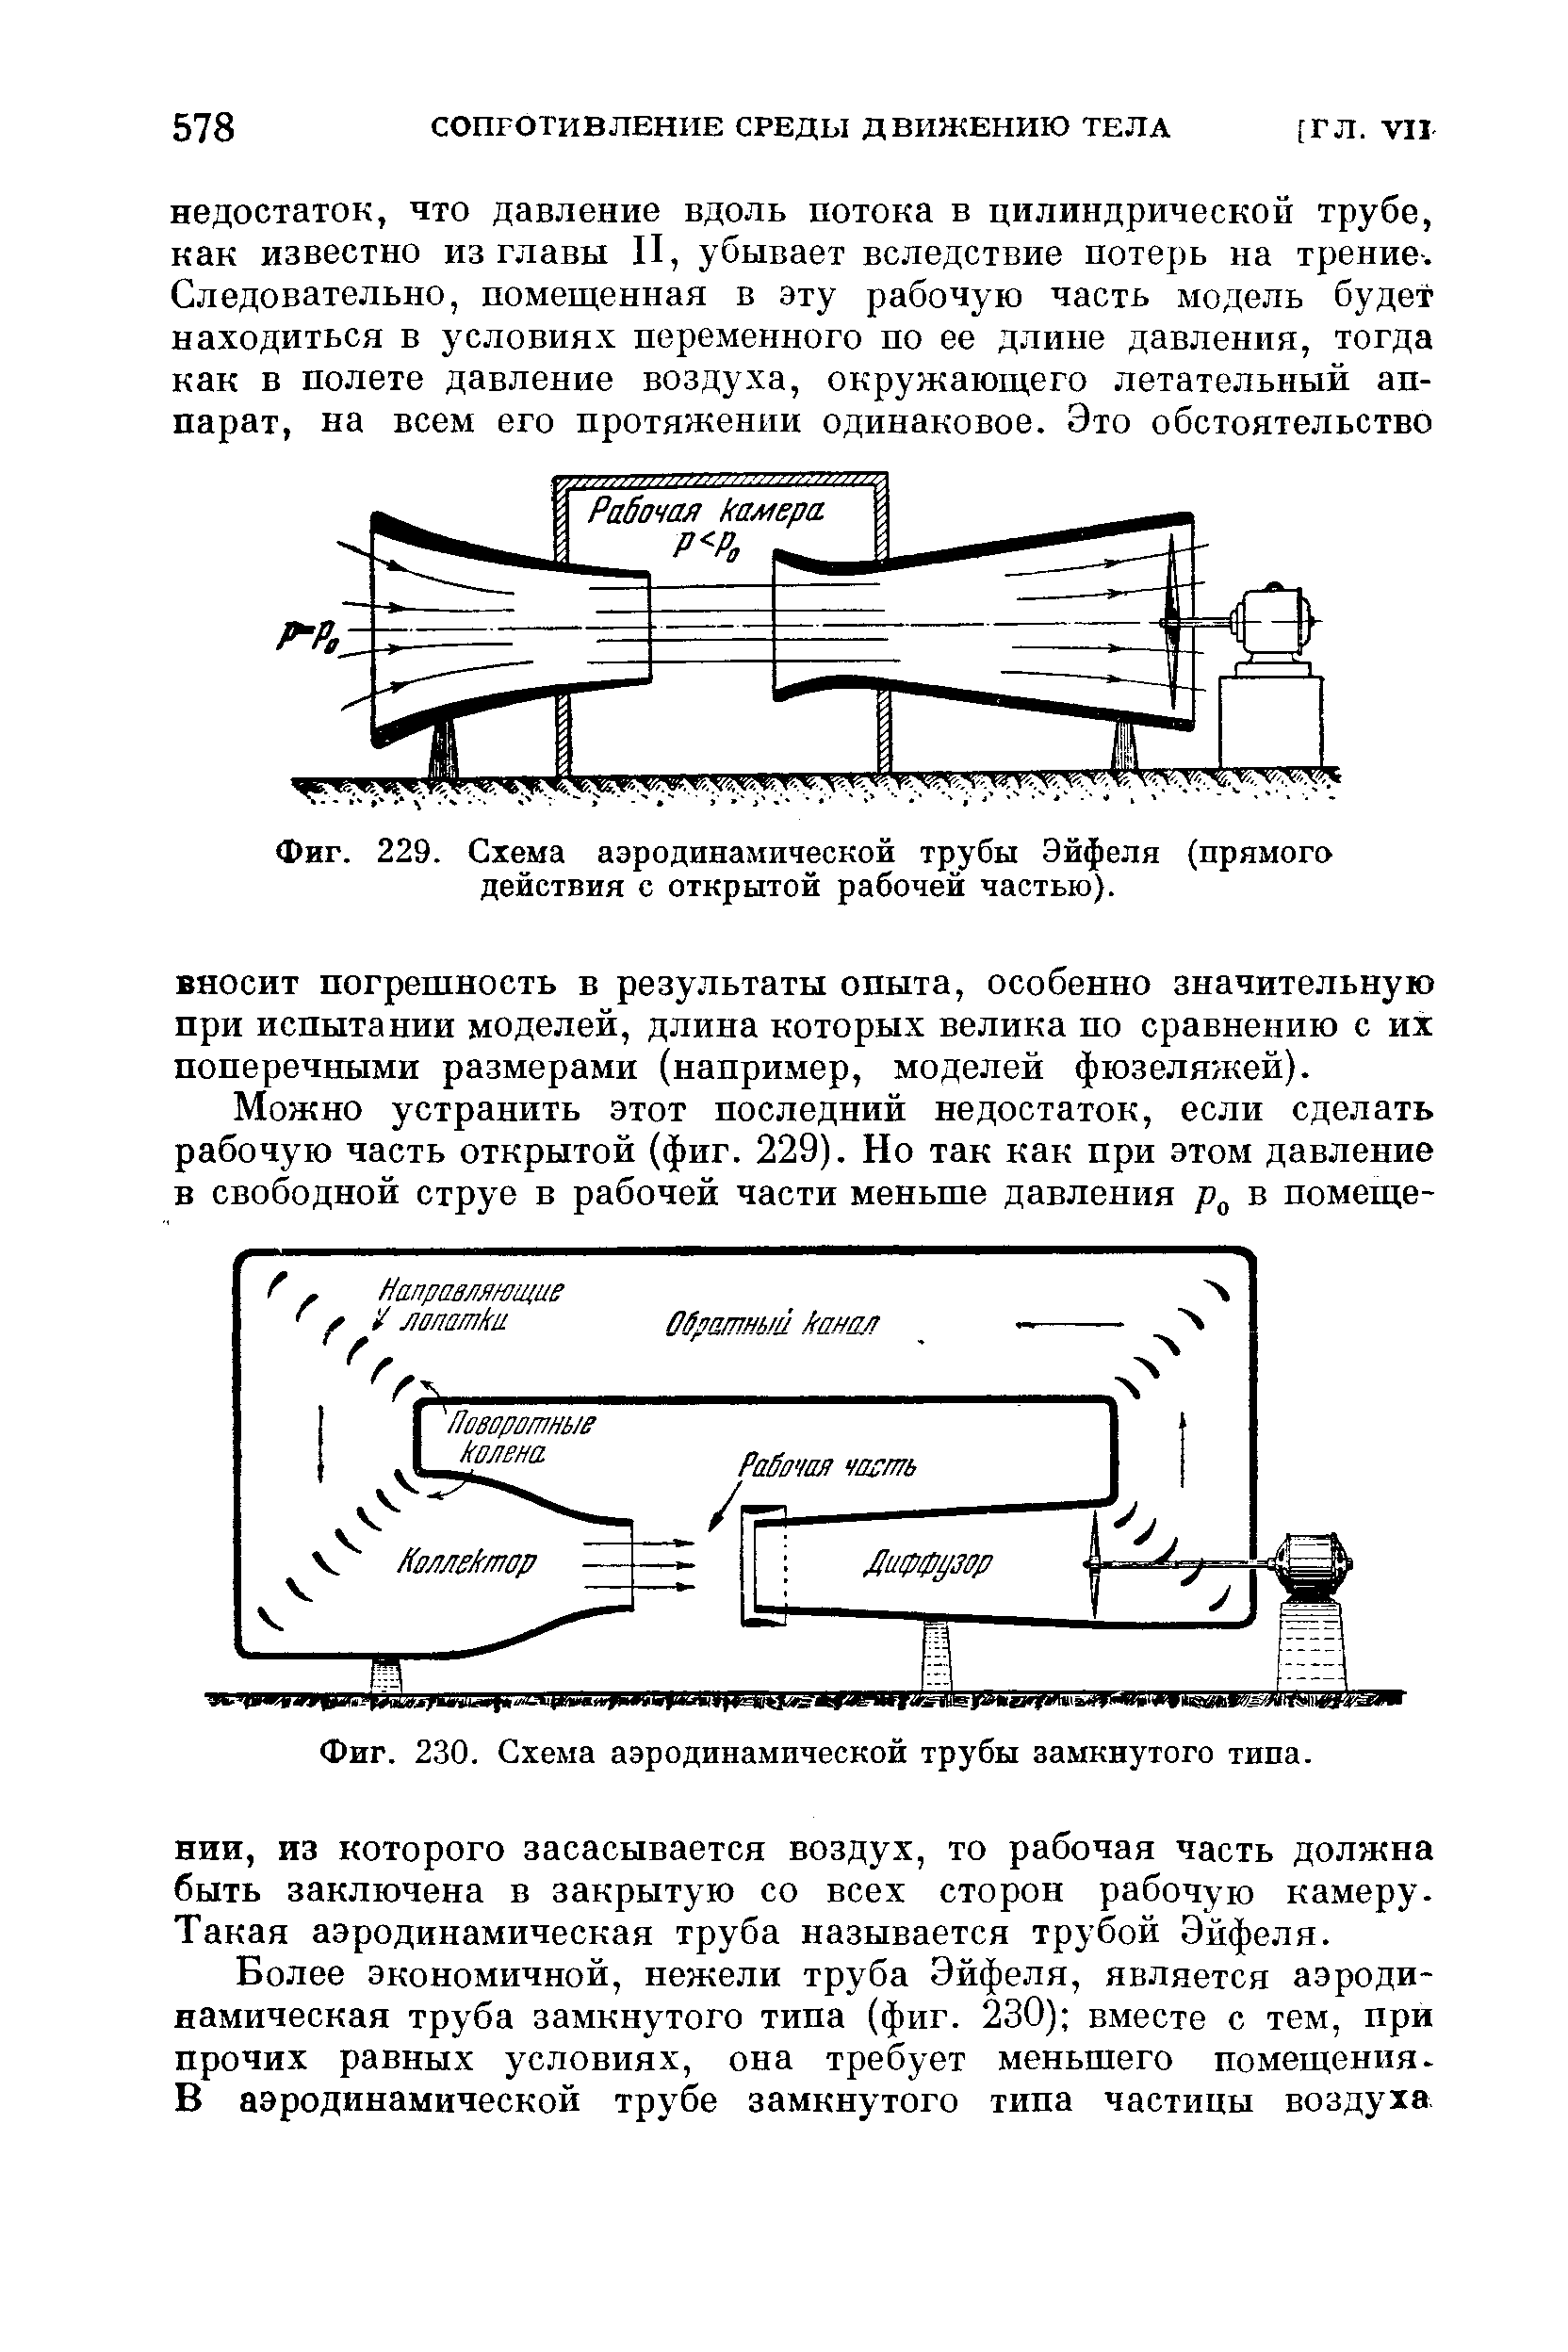 Фиг. 230. Схема аэродинамической трубы замкнутого типа.
